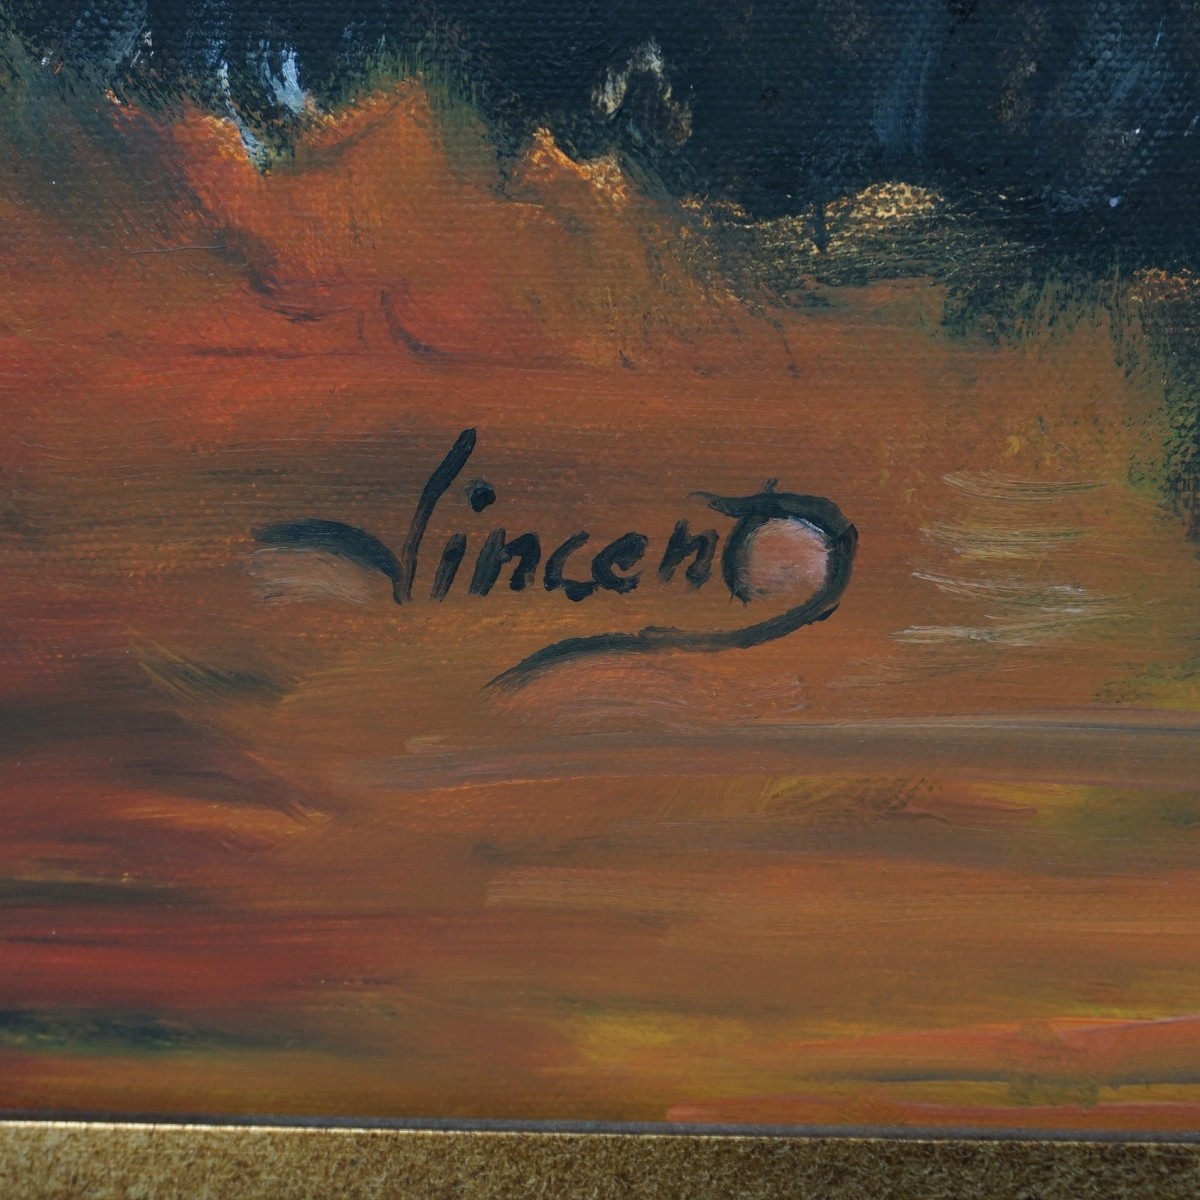 Vincent (20th C.)